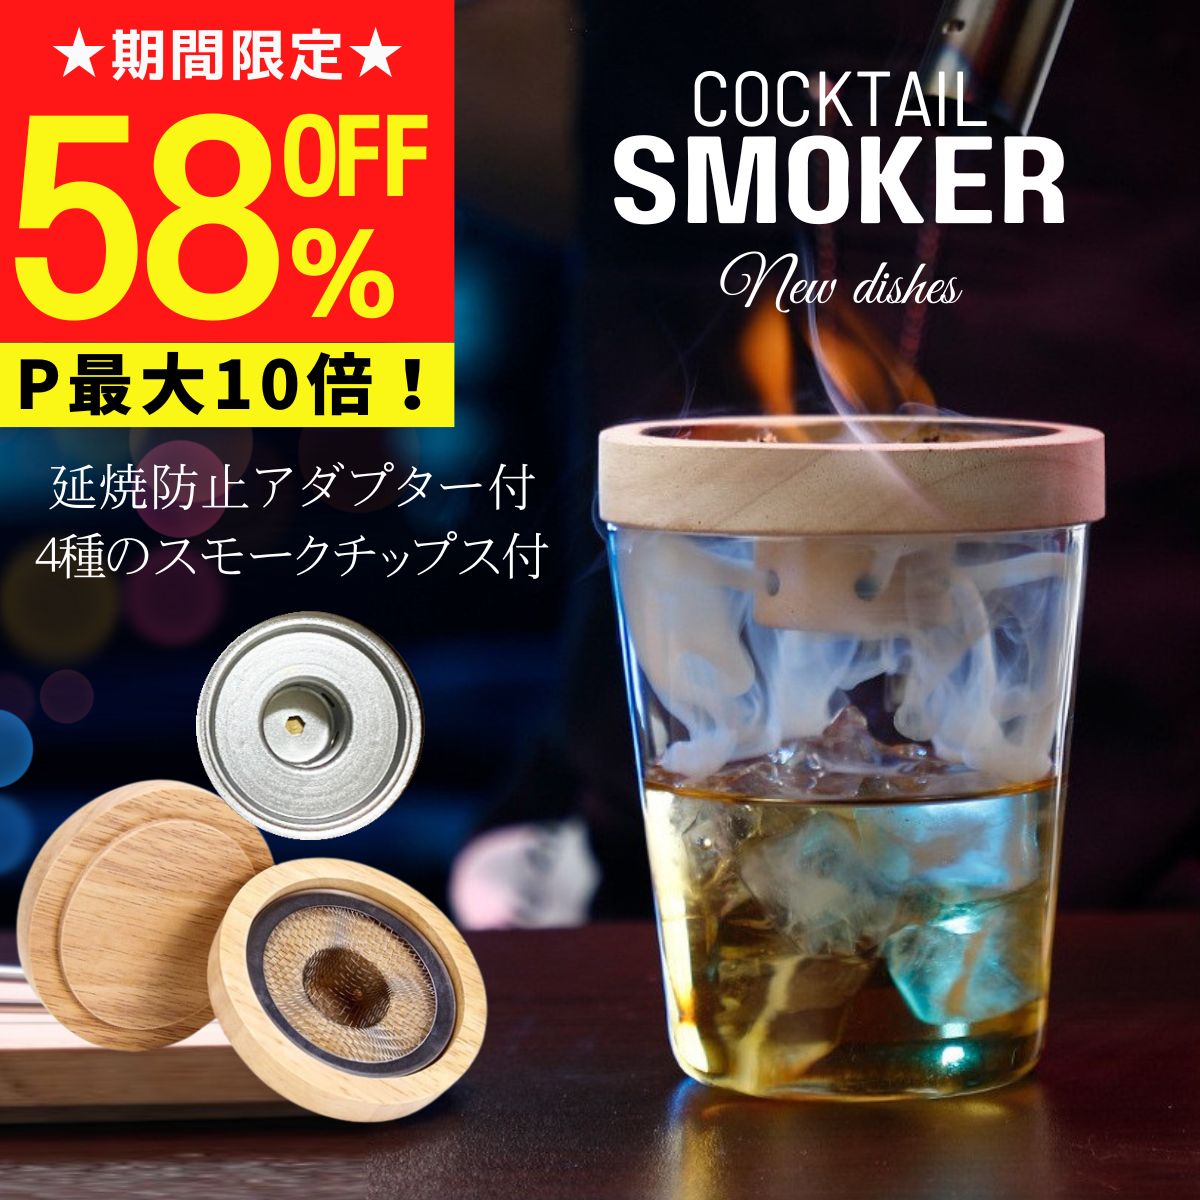 電気 燻製機 スモーカー アメリカ製 SM025: Smokette Elite: Cookshack Electric Smoker Oven 家電 【代引不可】